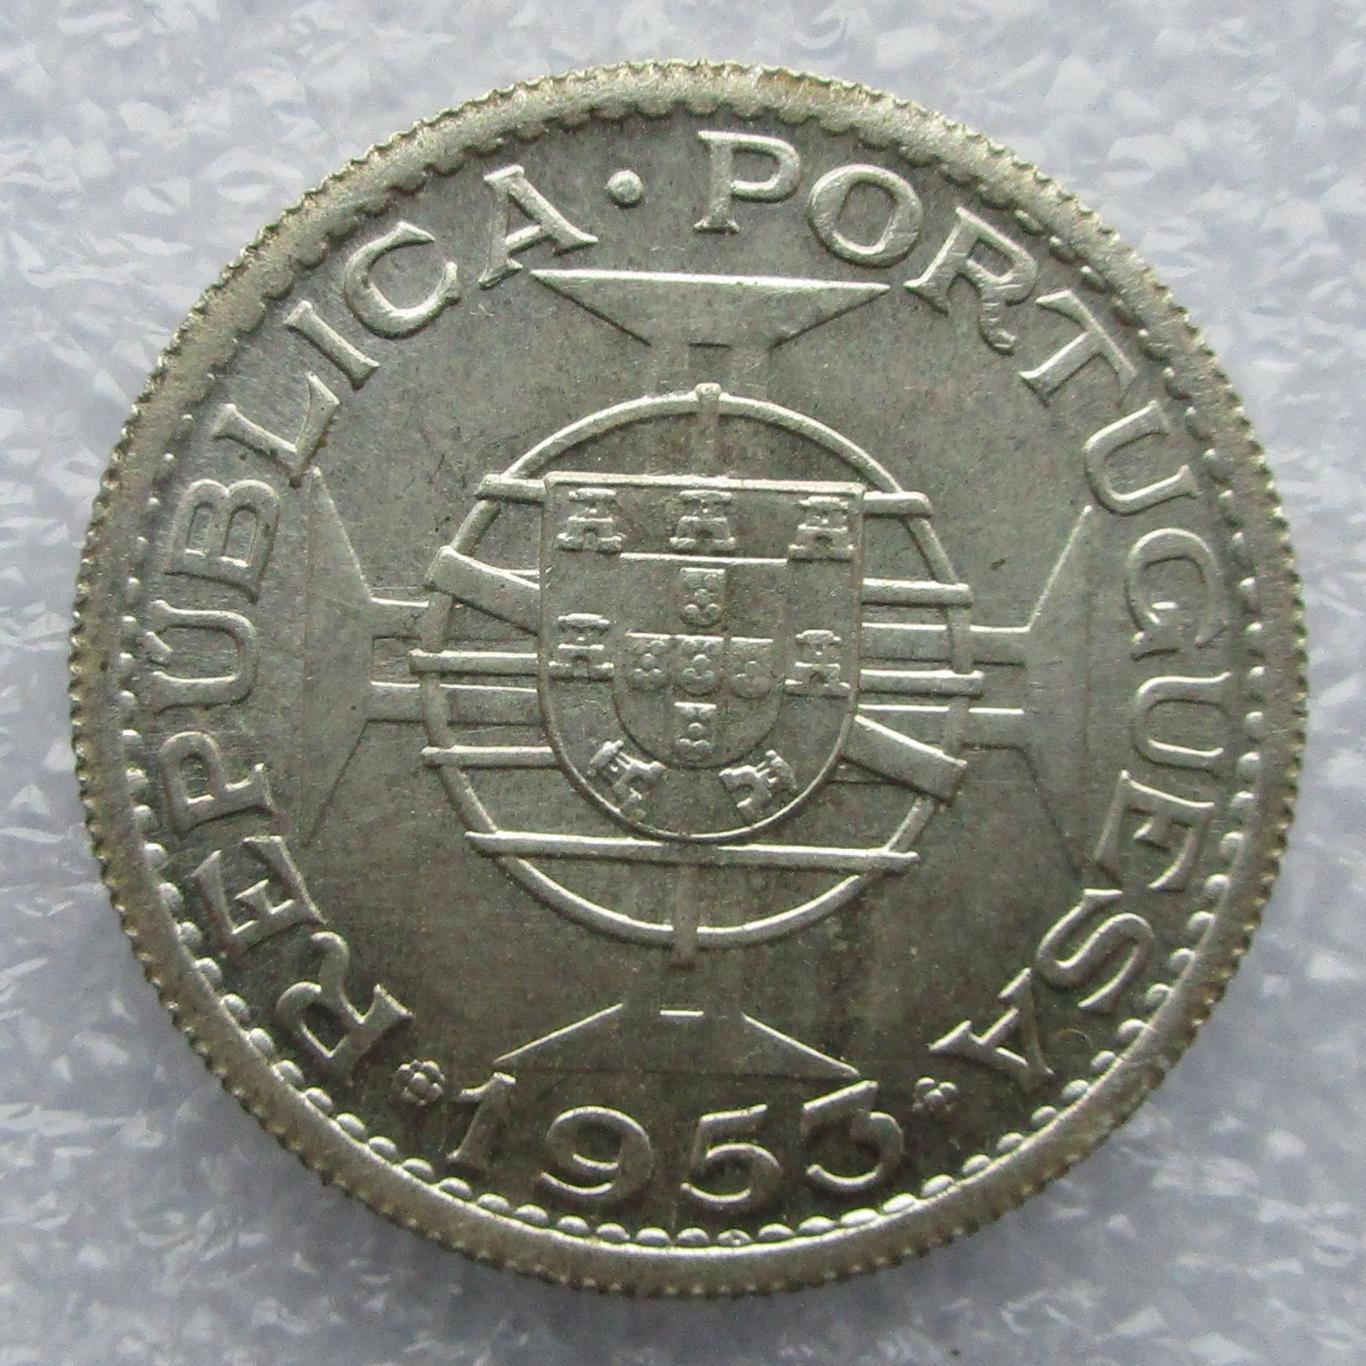 Кабо-Верде 10 эскудо 1953. Серебро. UNC. Штемпельный блеск. 1